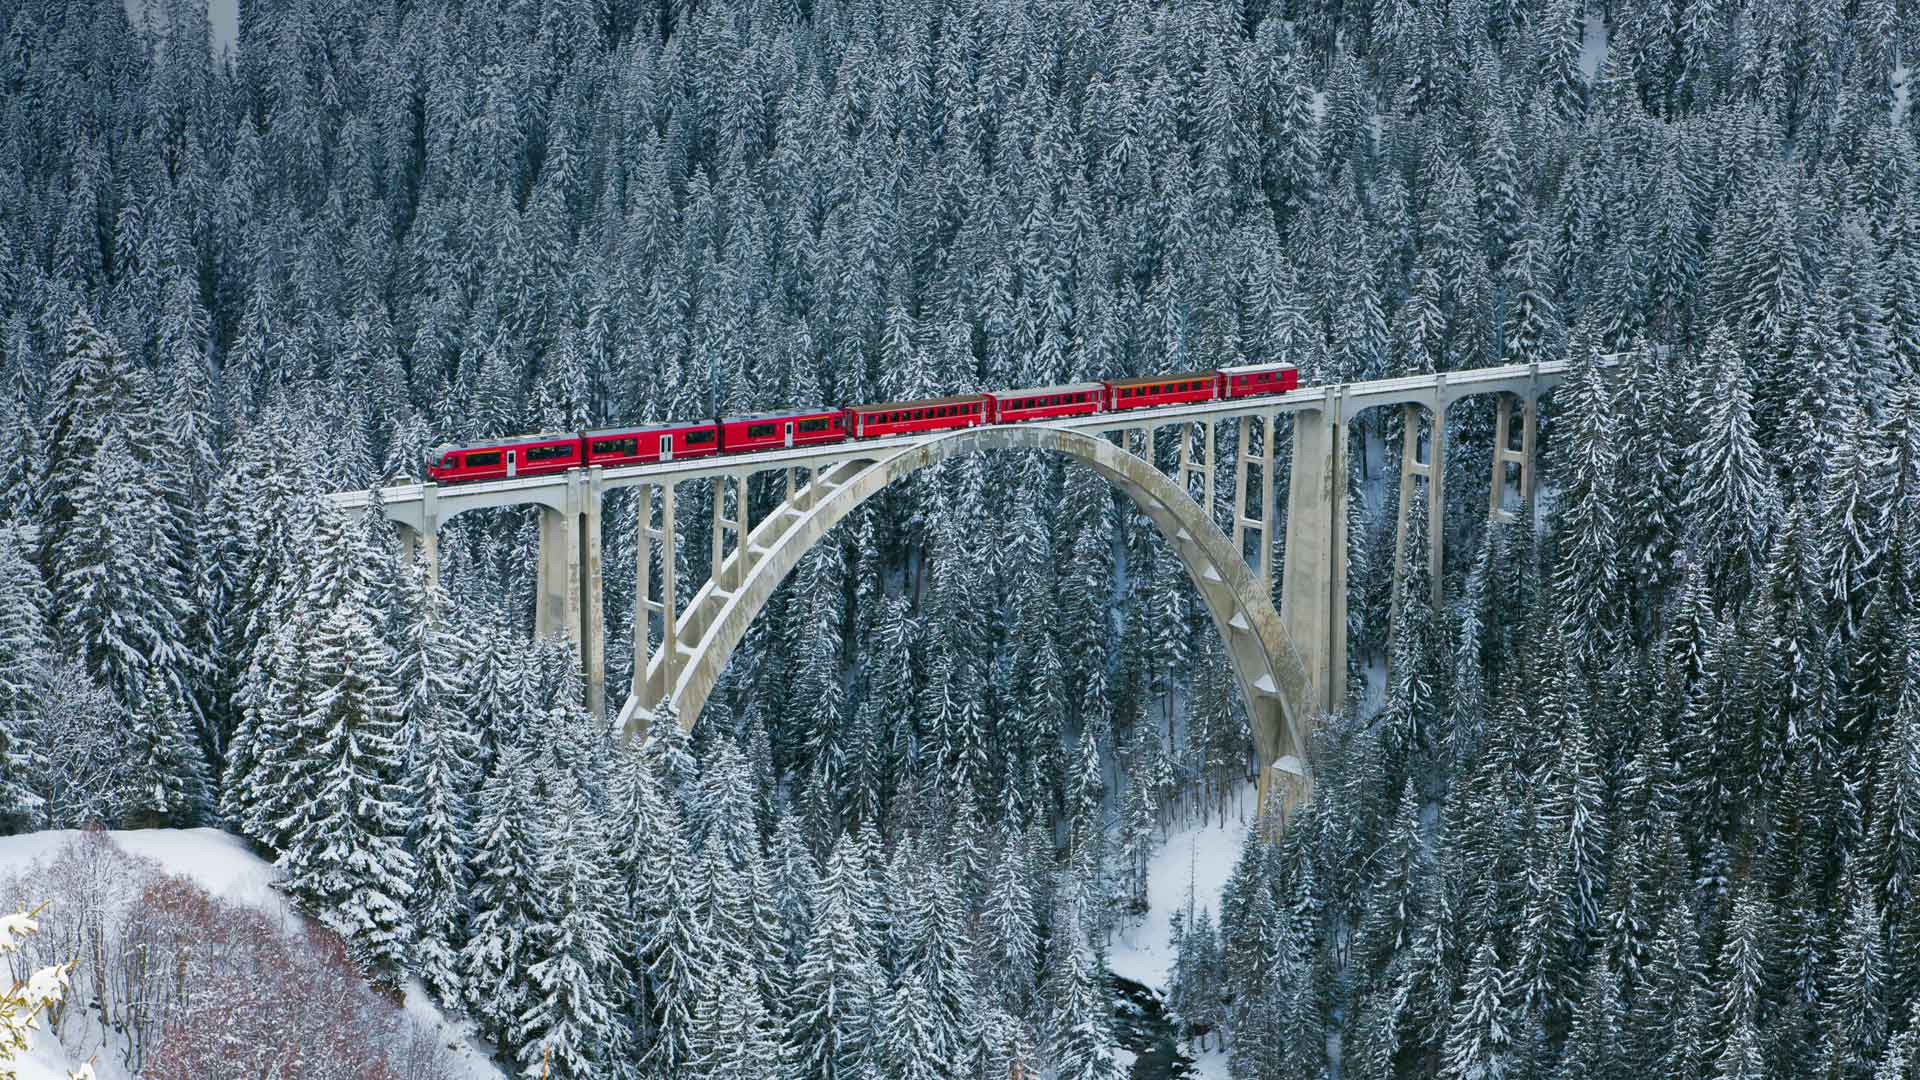 زیبا ترین تصویر طبیعت و پل با کیفت عالی برای دانلود 